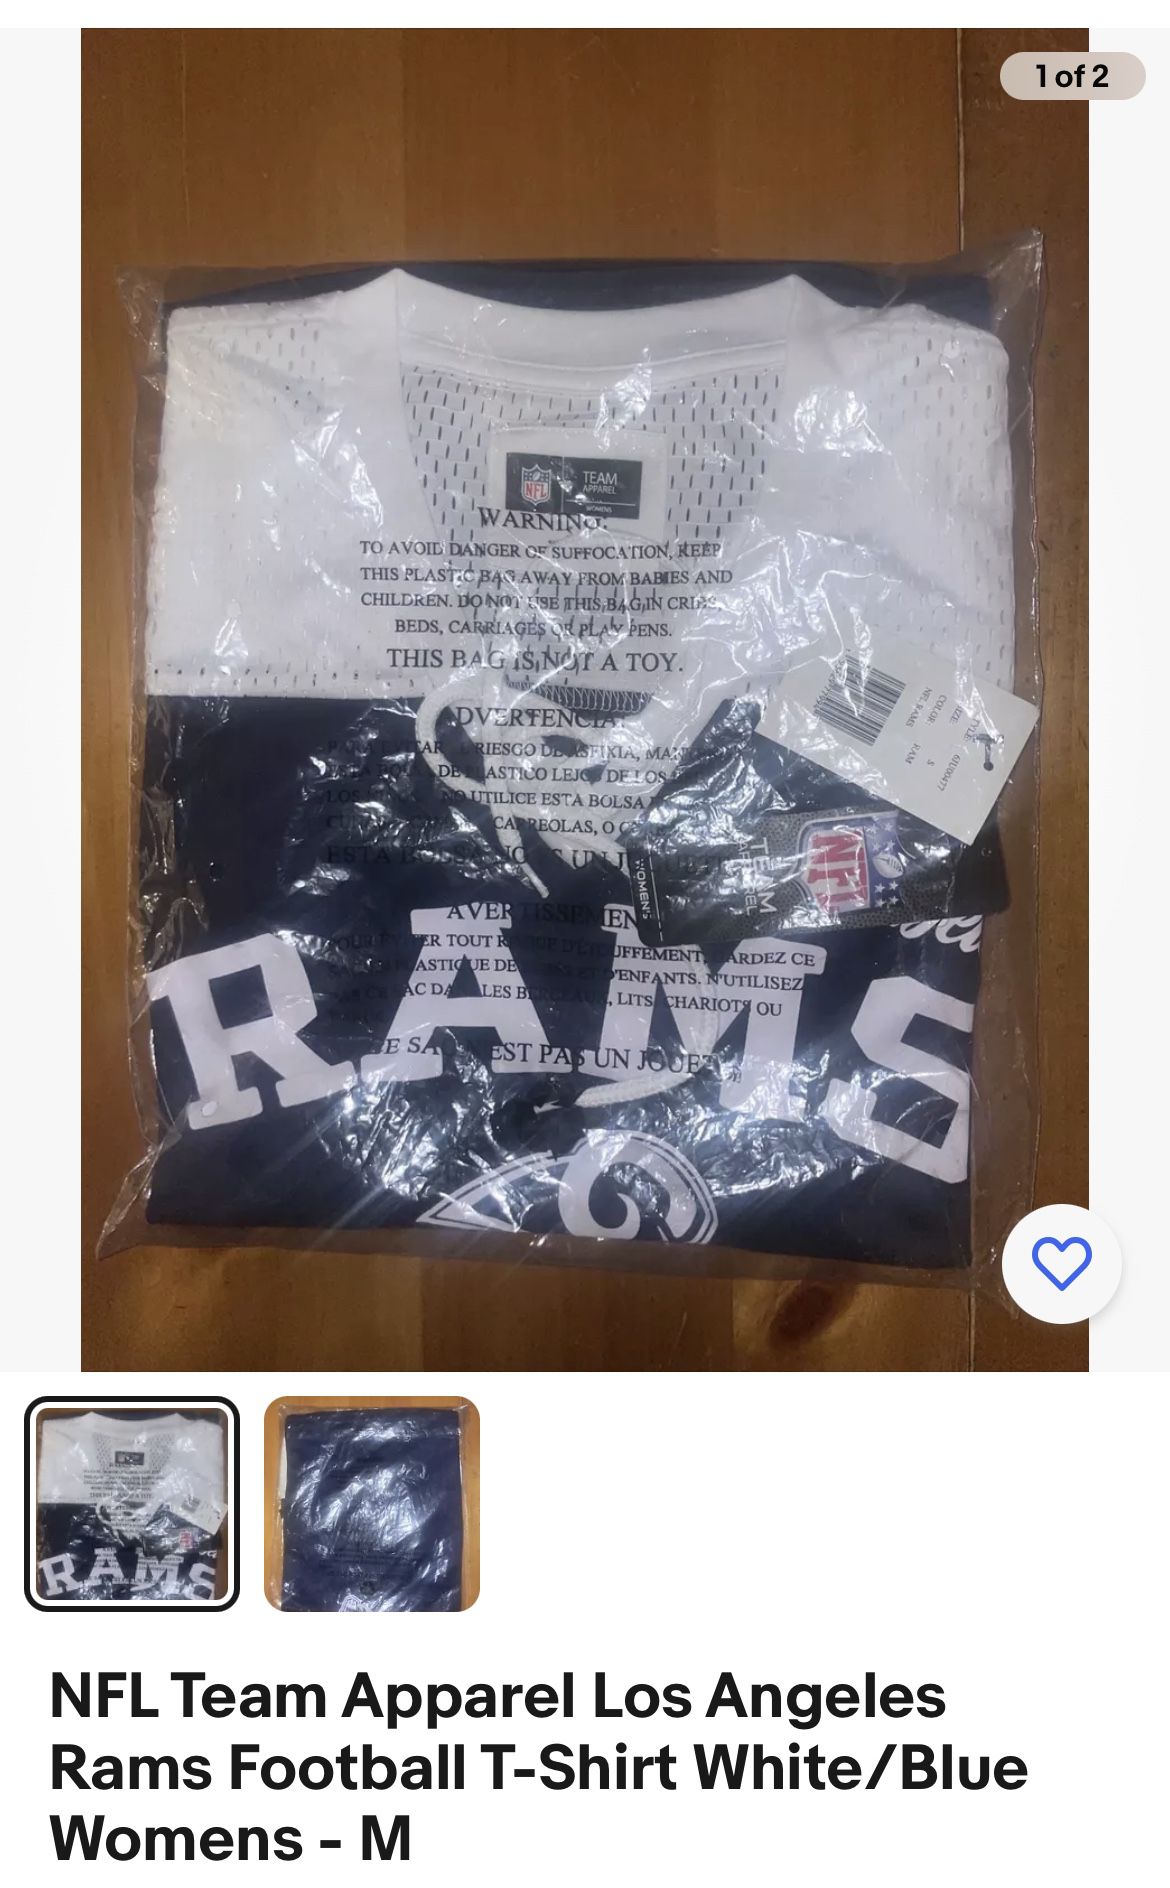 LA Rams NFL Team Apparel Los Angeles Rams Football T-Shirt White/Blue Womens - M